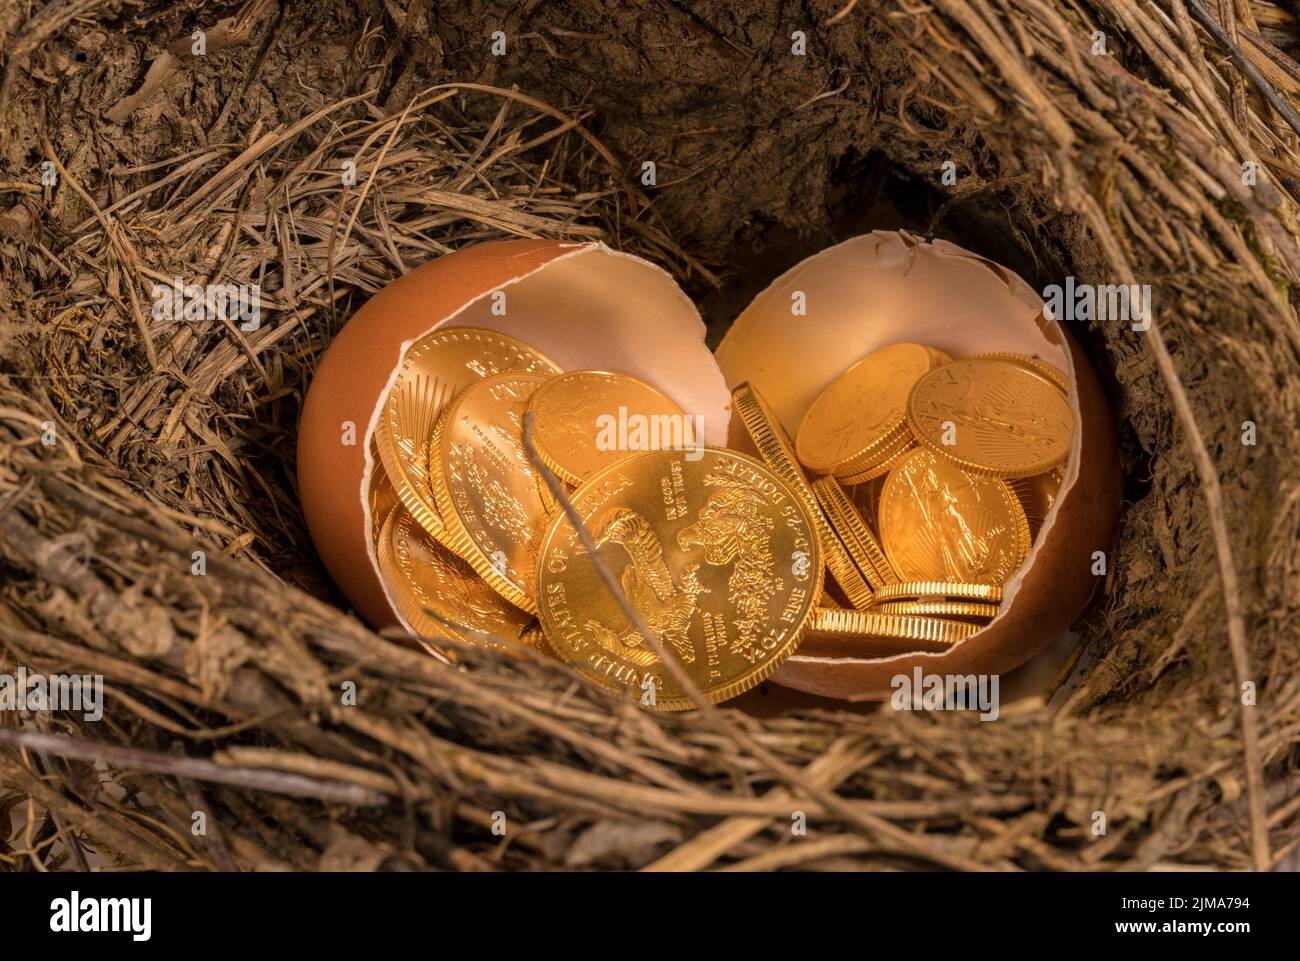 Monedas de oro puro en cáscara de huevo ilustrando el huevo del nido Foto de stock